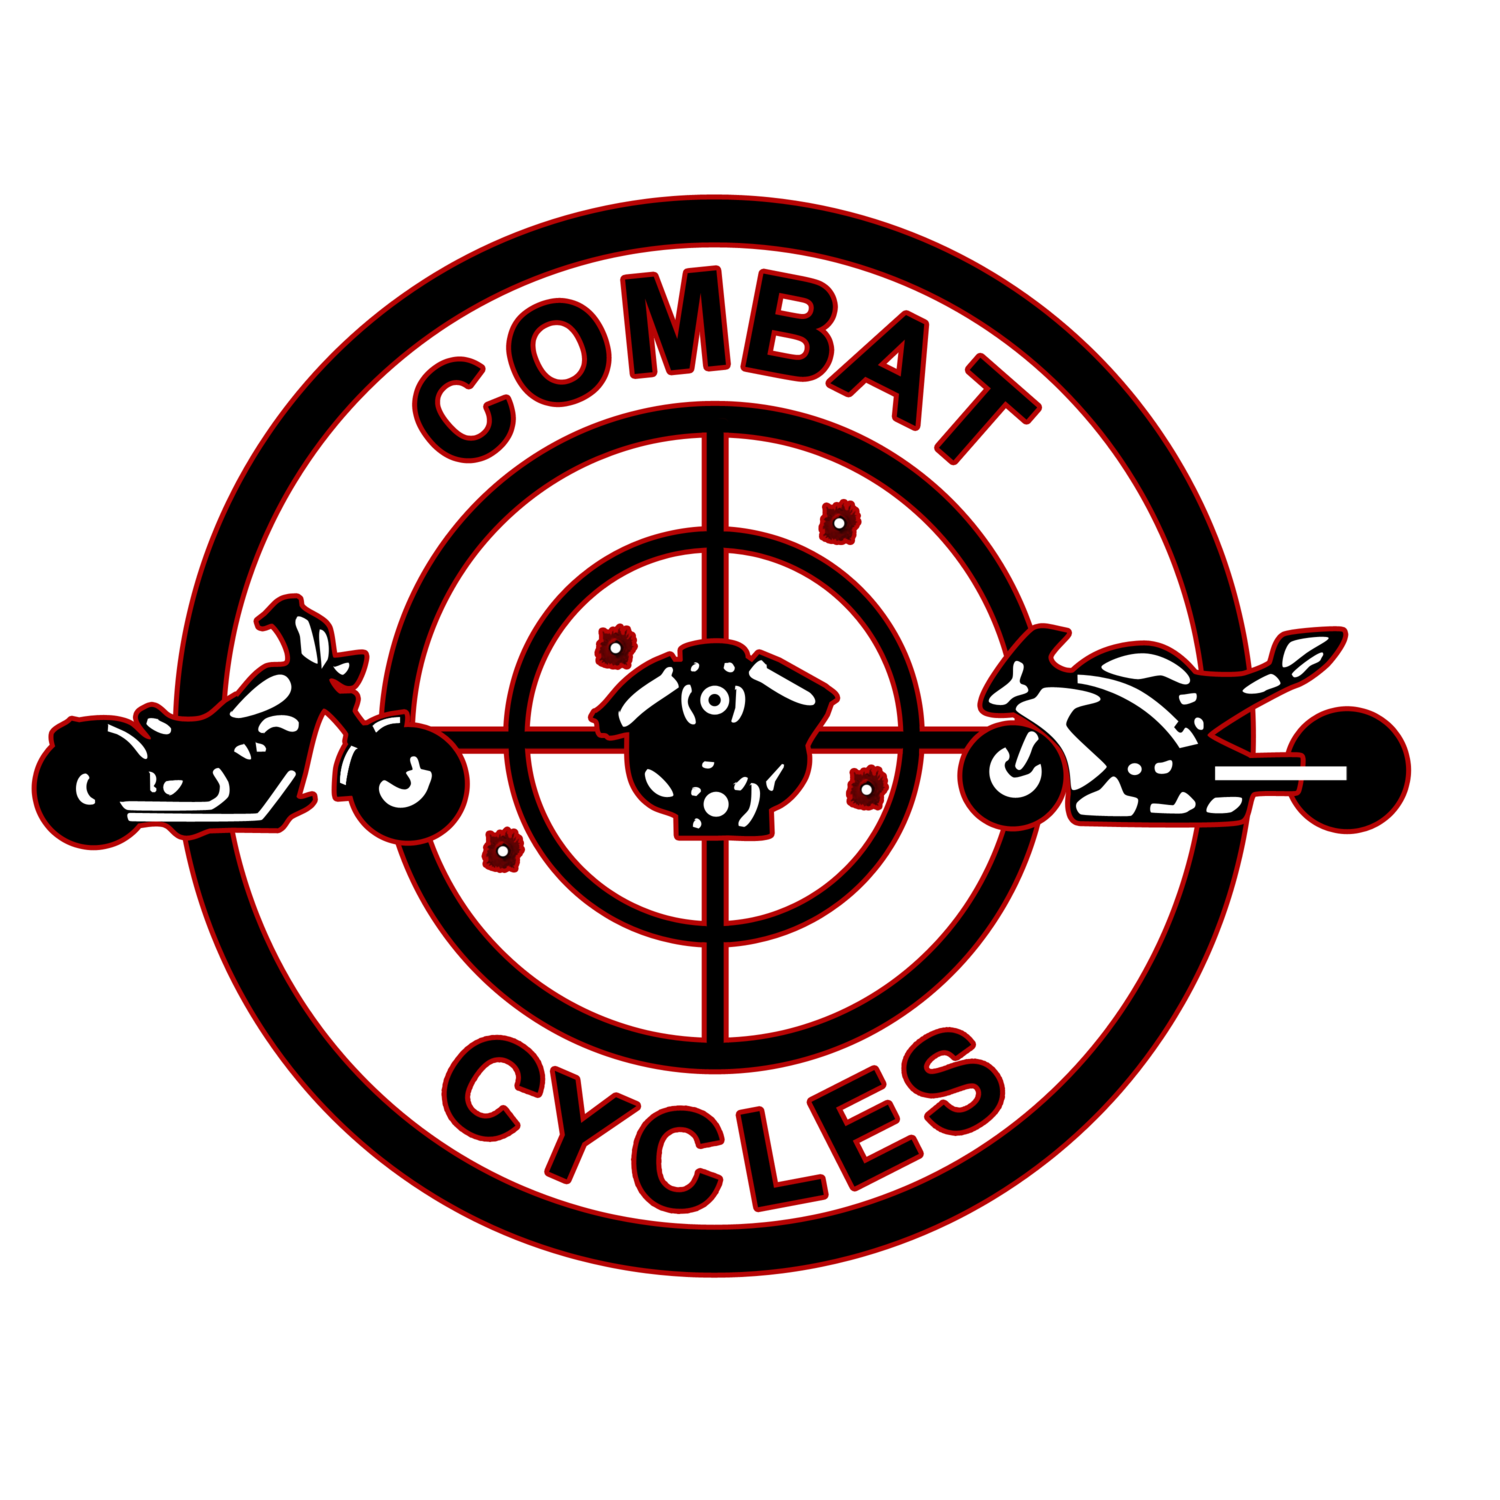 COMBAT CYCLES